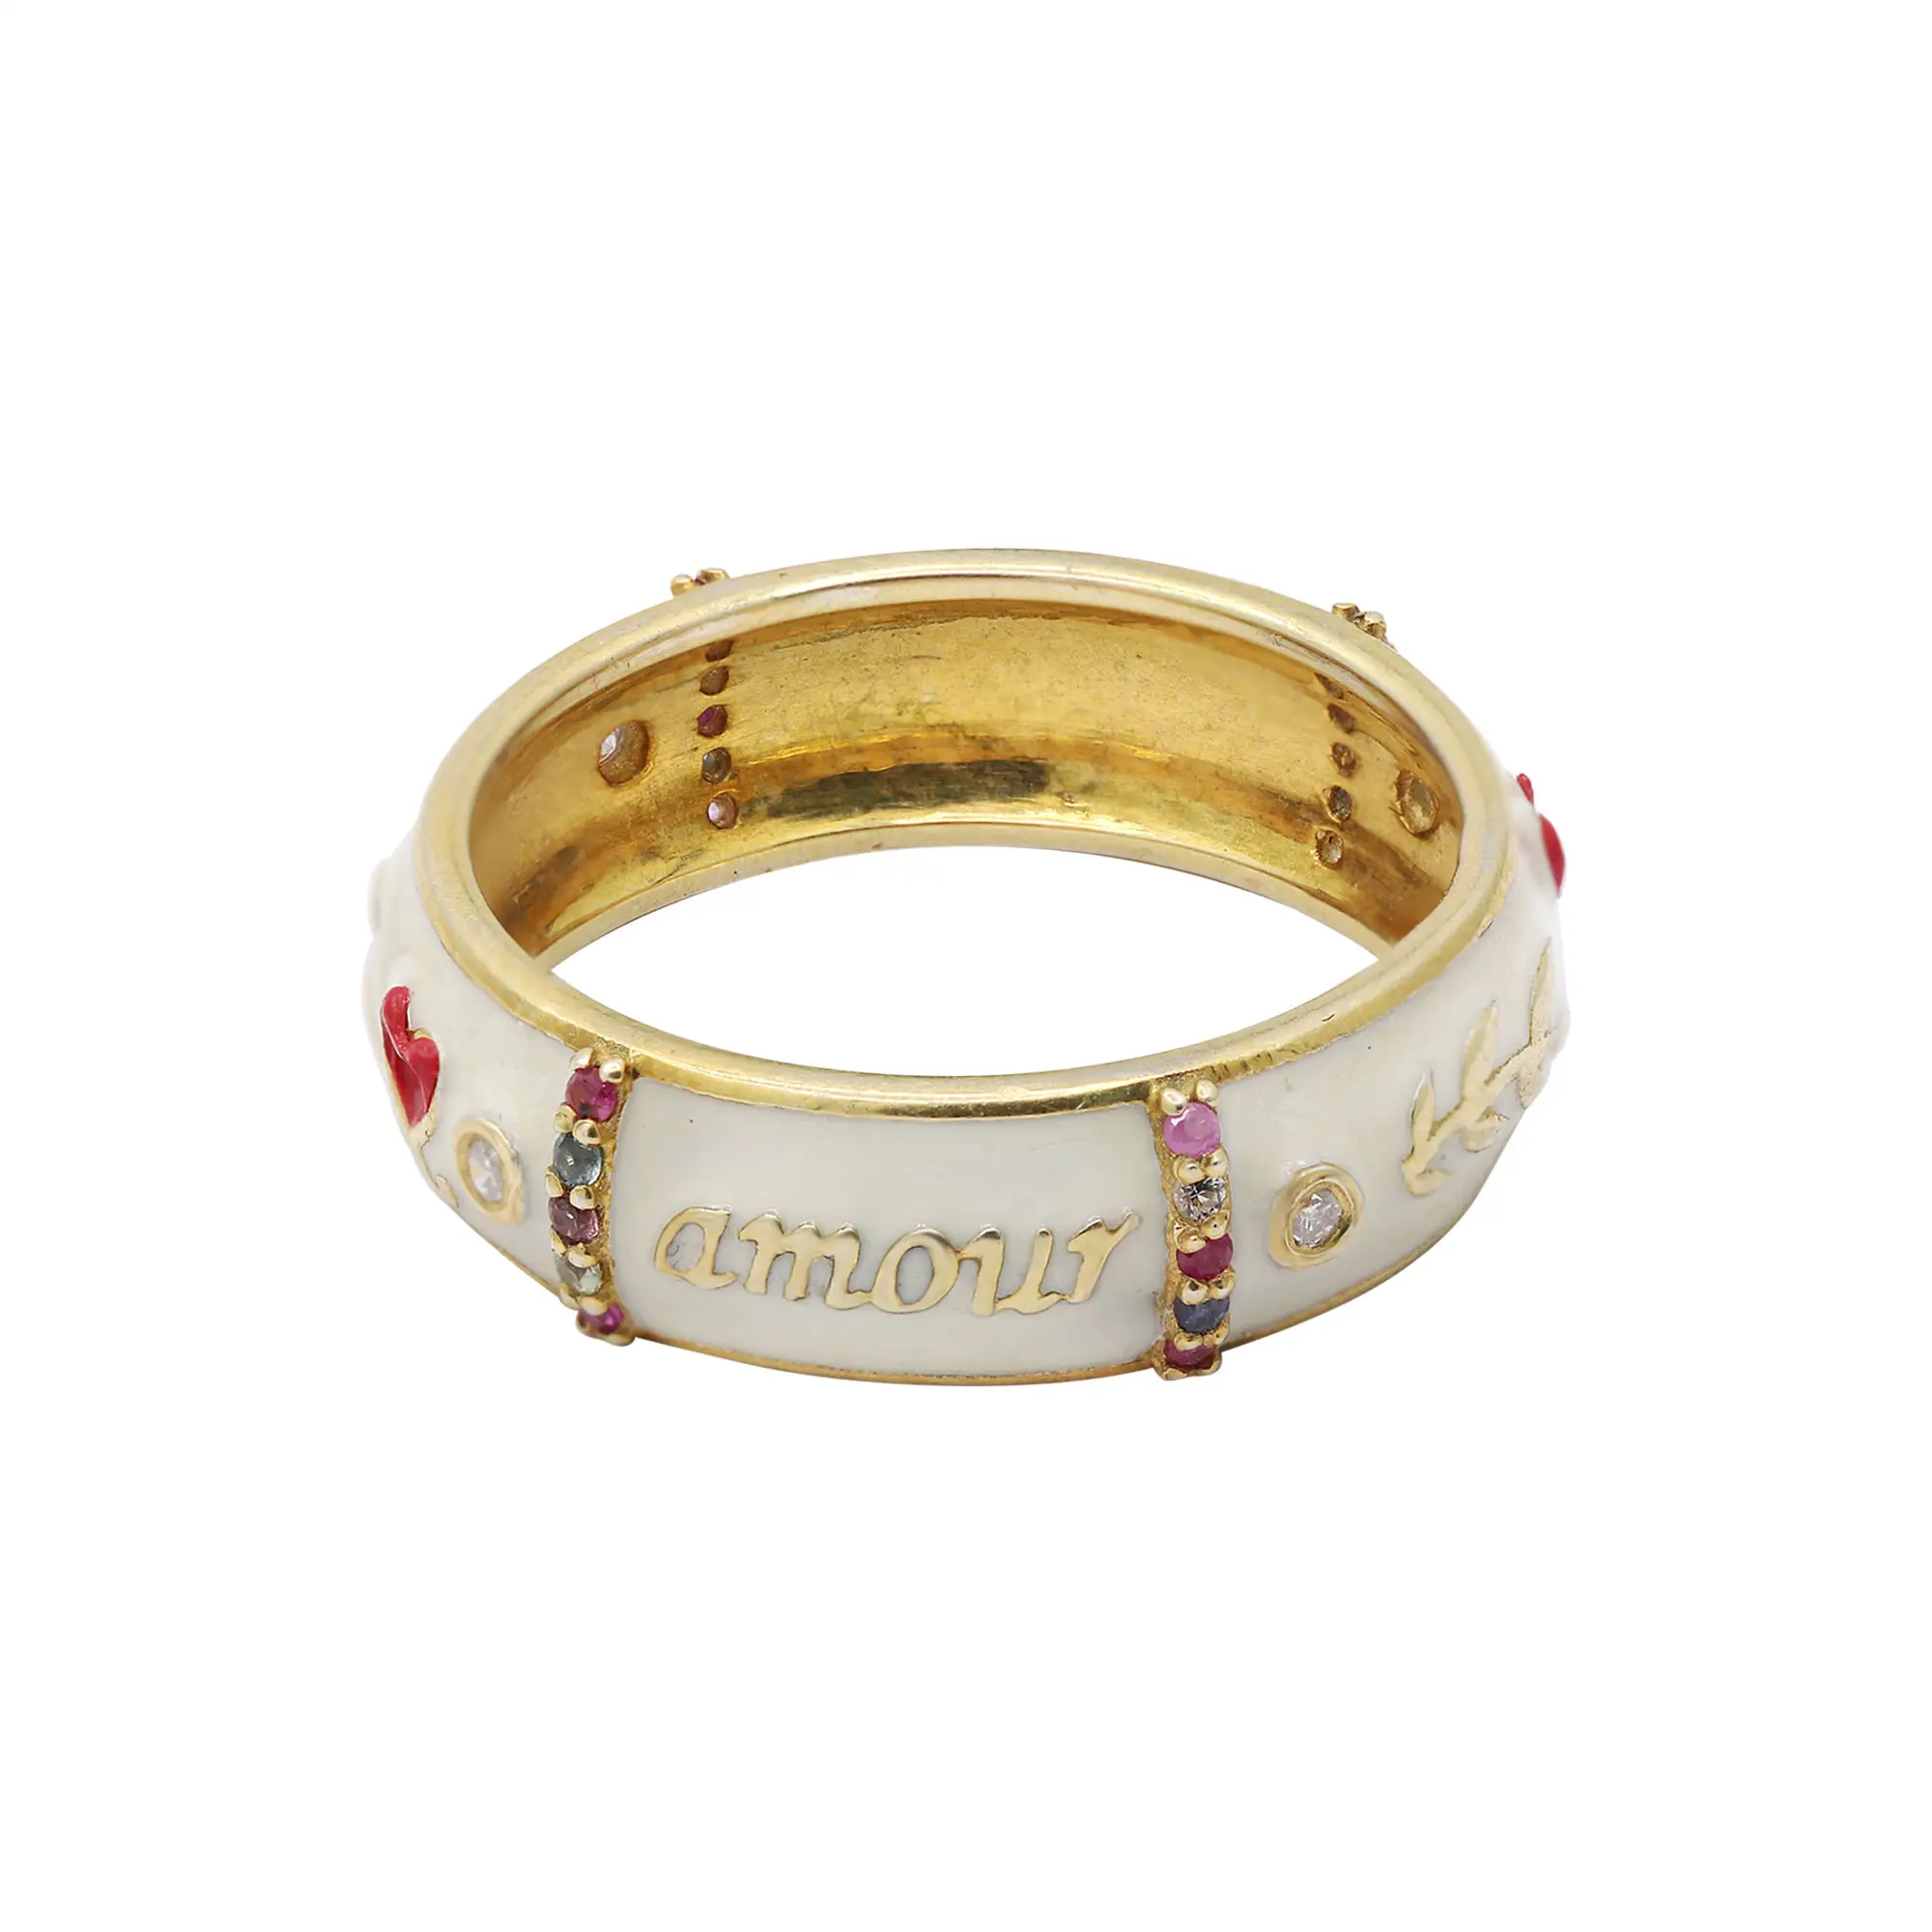 नवीनतम डिजाइन "प्रणय toujours" उत्कीर्ण सोना मढ़वाया तामचीनी जड़ना बहु नीलम रत्न और हीरा 925 चांदी की अंगूठी गहने